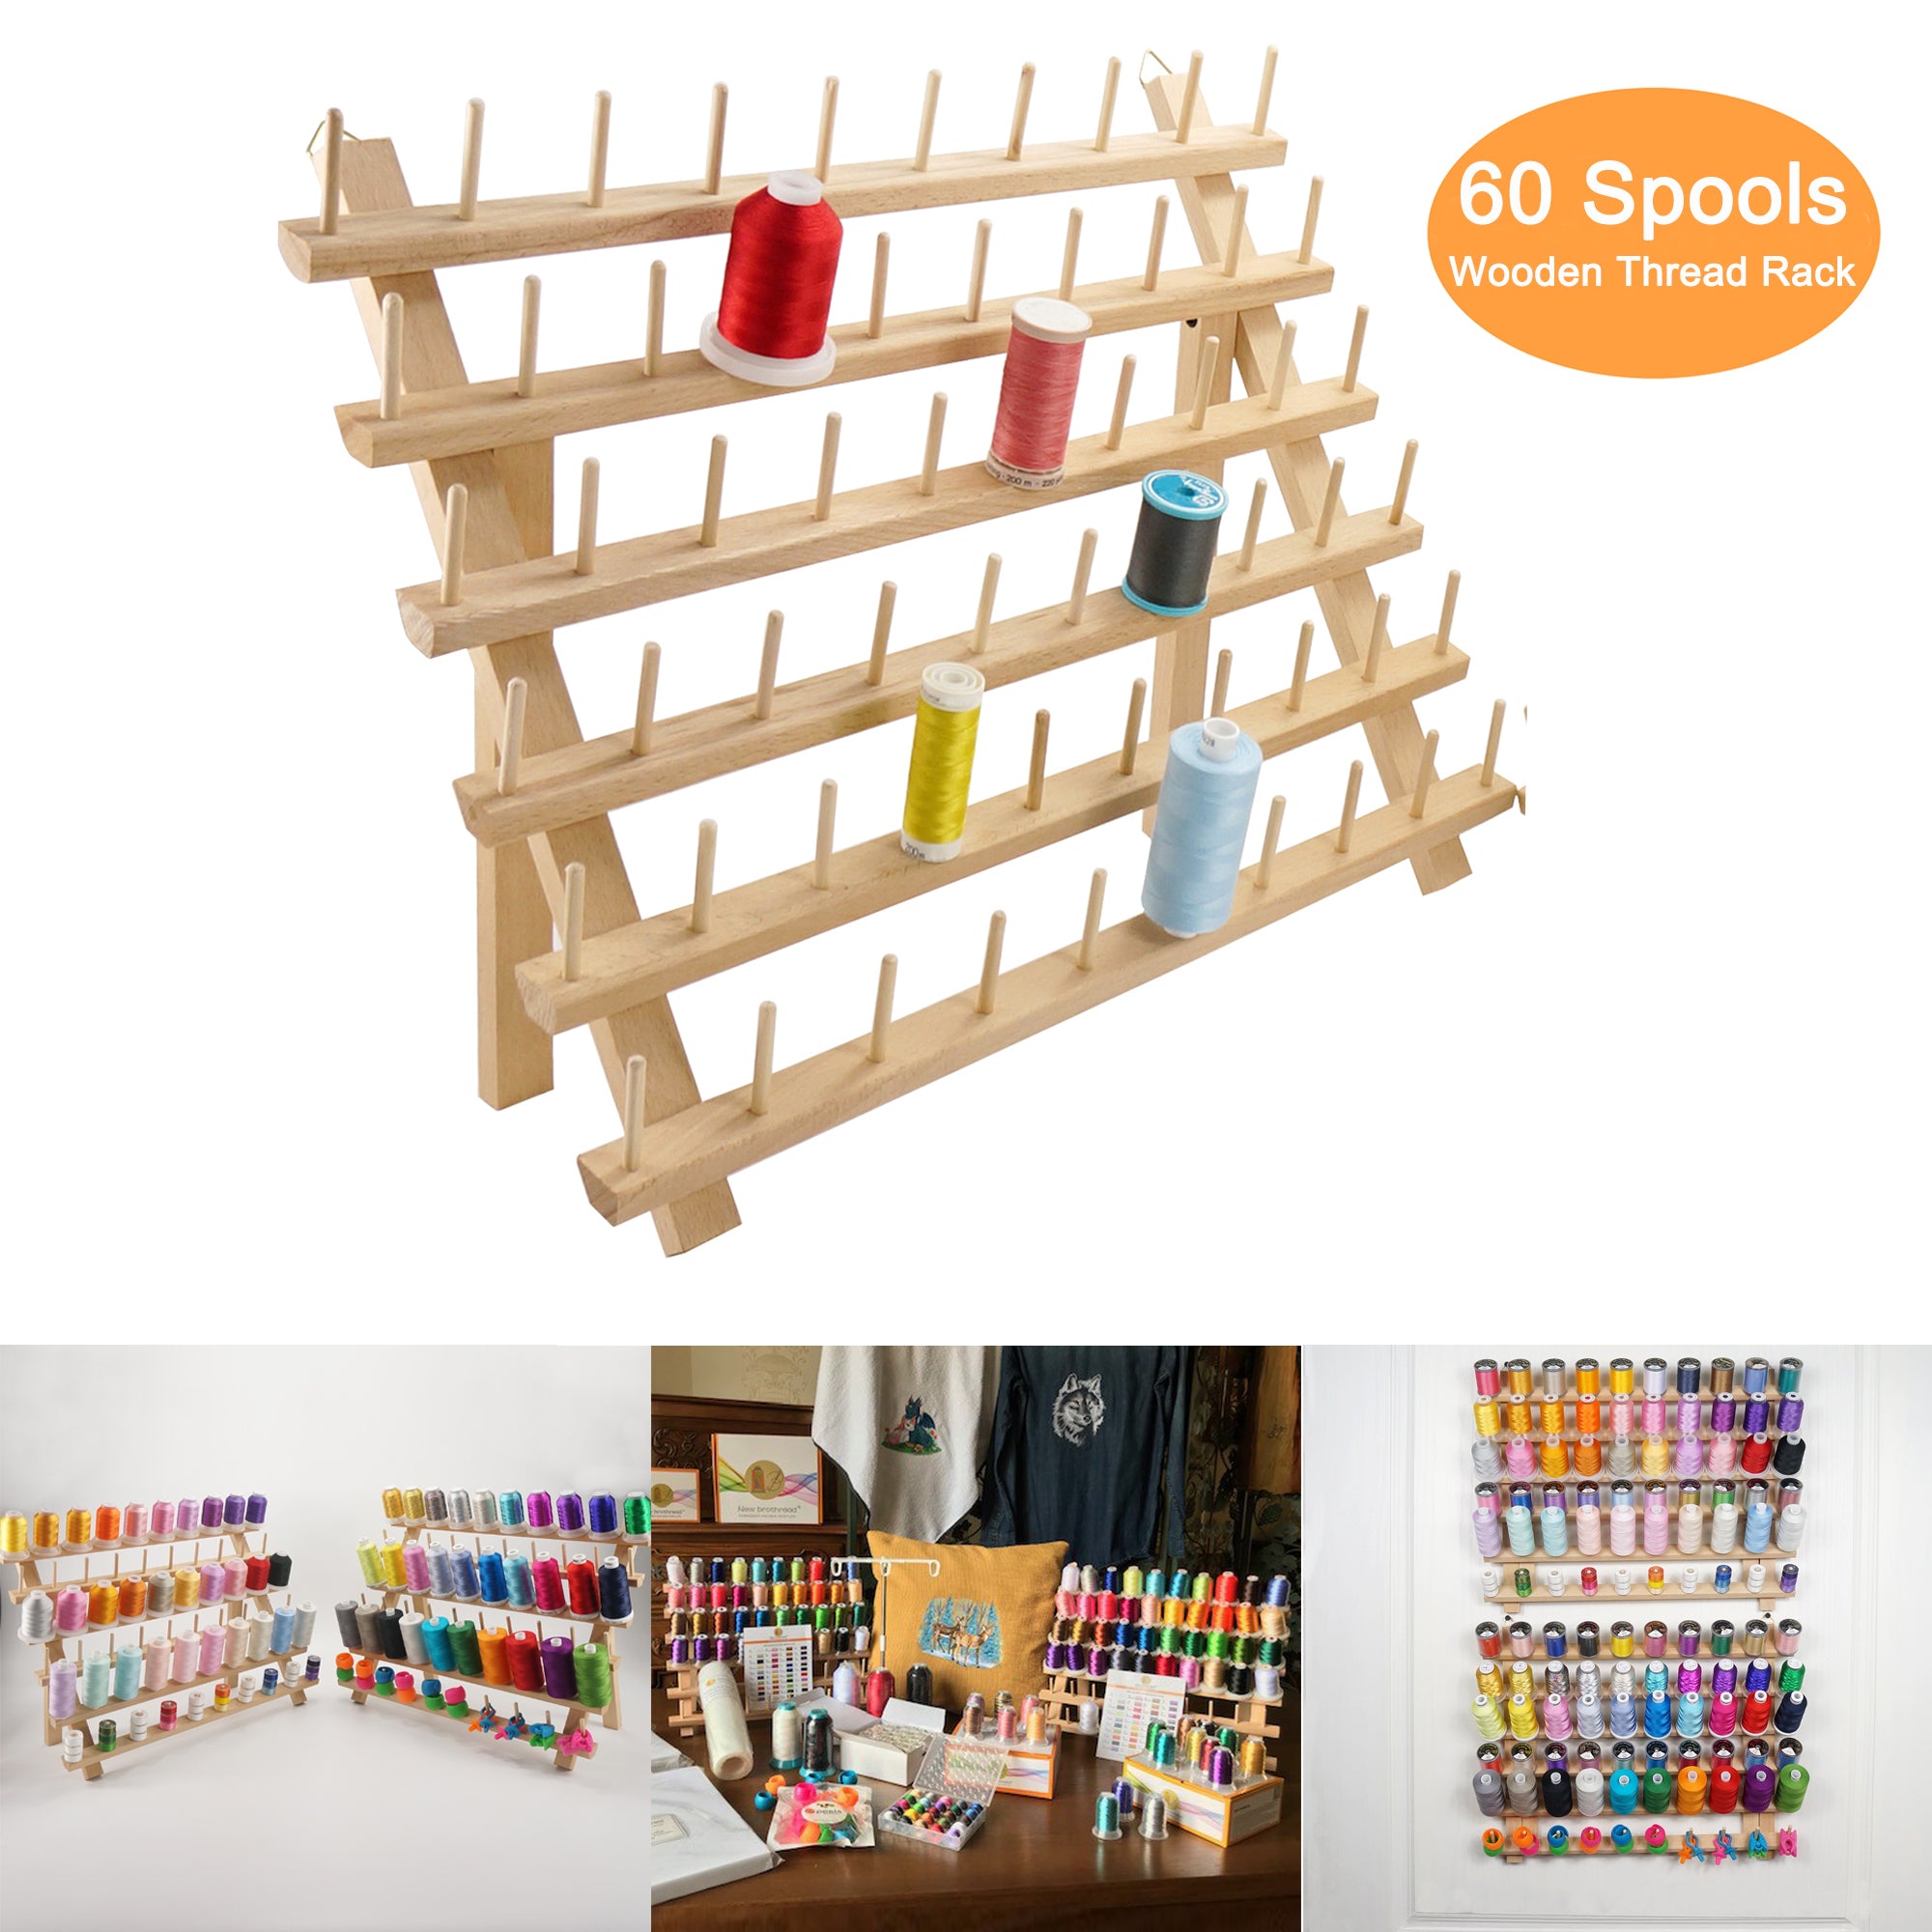 New Brothread 60 Spools Wooden Thread Rack / Thread Holder Organizer w